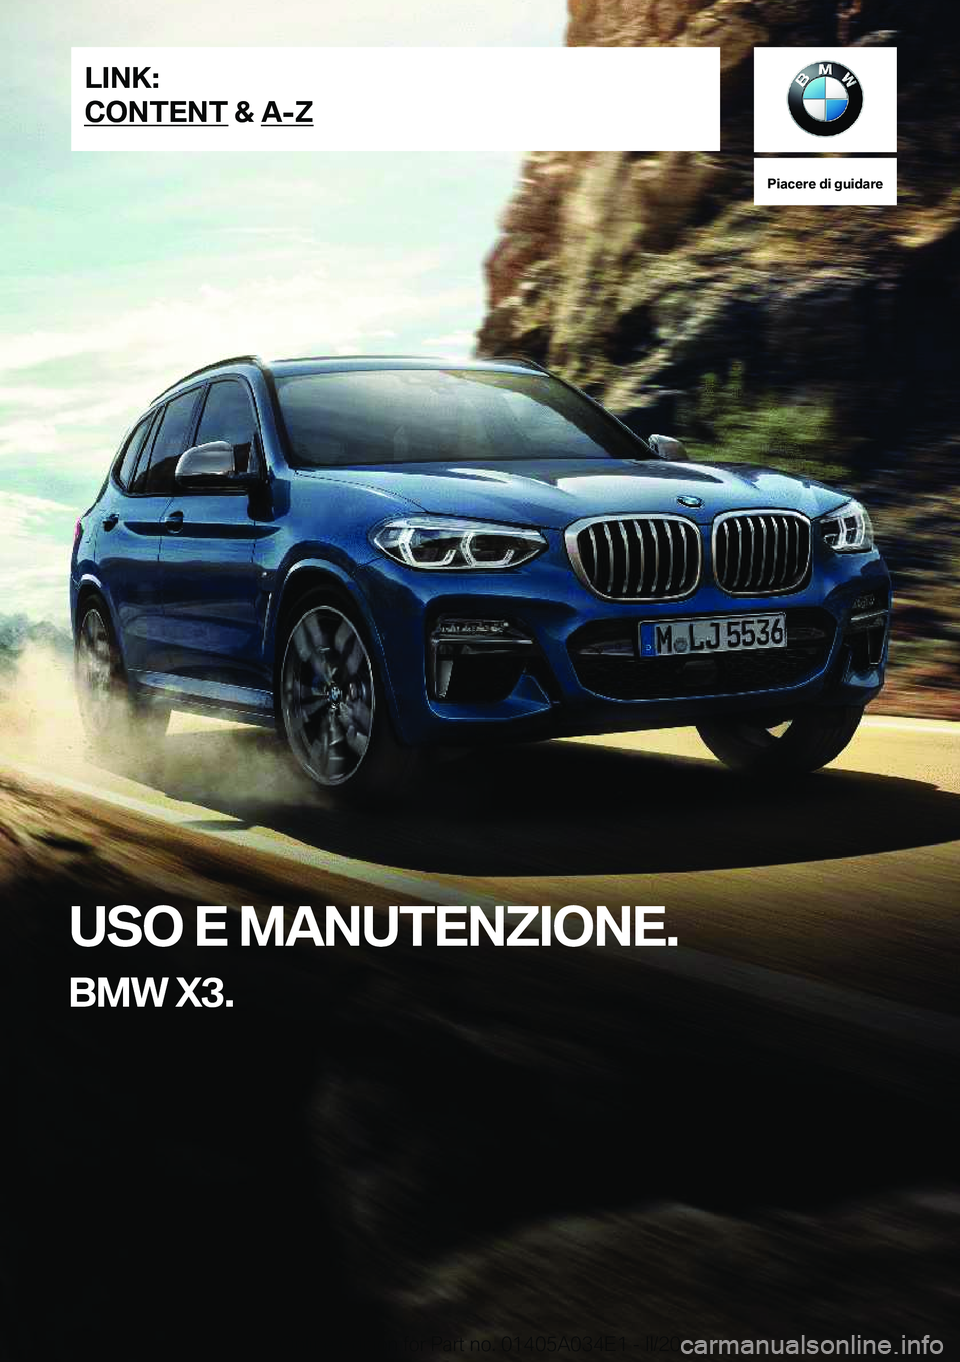 BMW X3 2020  Libretti Di Uso E manutenzione (in Italian) �P�i�a�c�e�r�e��d�i��g�u�i�d�a�r�e
�U�S�O��E��M�A�N�U�T�E�N�Z�I�O�N�E�.
�B�M�W��X�3�.�L�I�N�K�:
�C�O�N�T�E�N�T��&��A�-�Z�O�n�l�i�n�e��E�d�i�t�i�o�n��f�o�r��P�a�r�t��n�o�.��0�1�4�0�5�A�0�3�